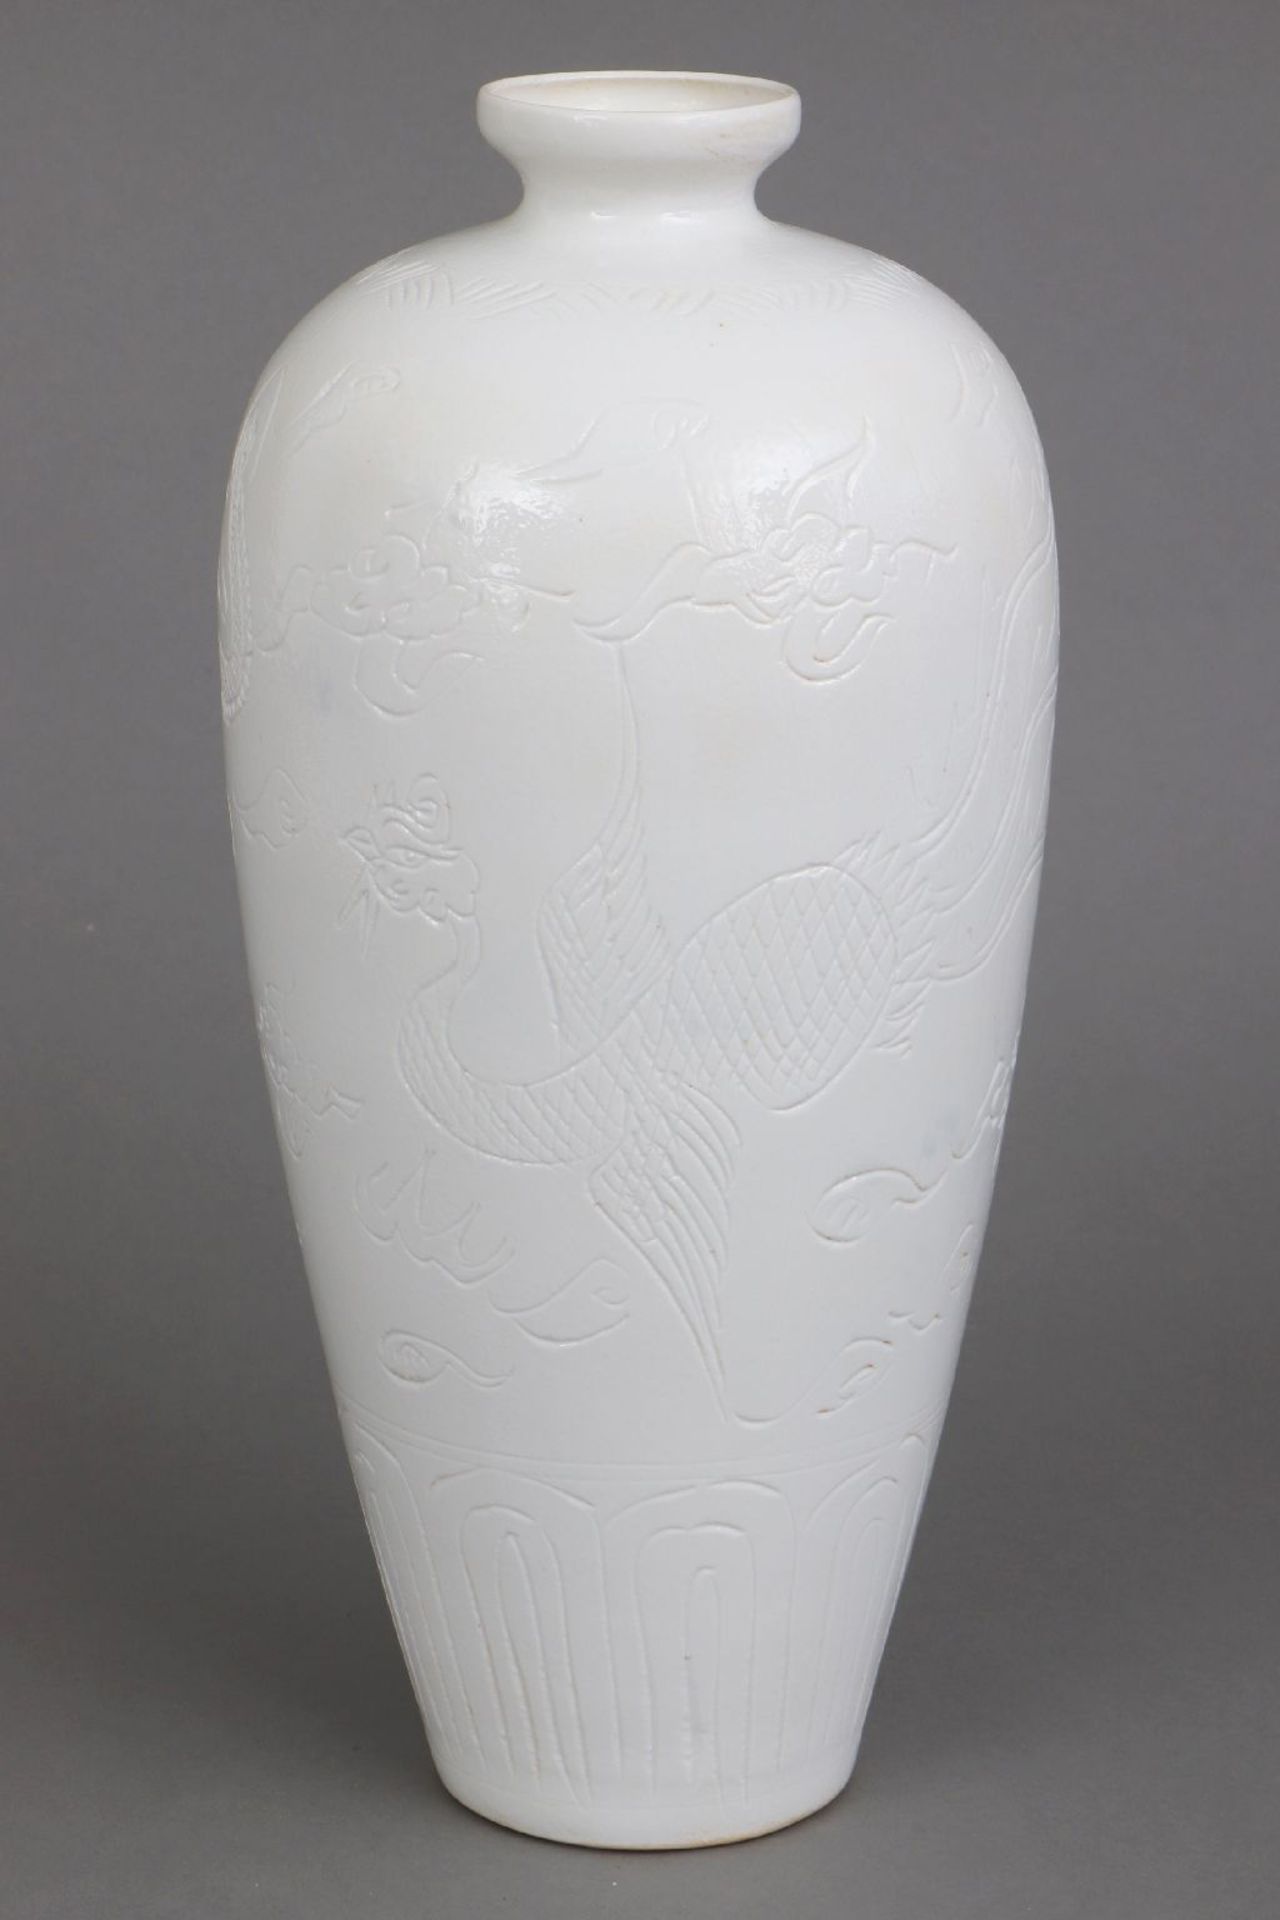 Chinesische Porzellanvase mit egg-shell Glasur - Image 2 of 7